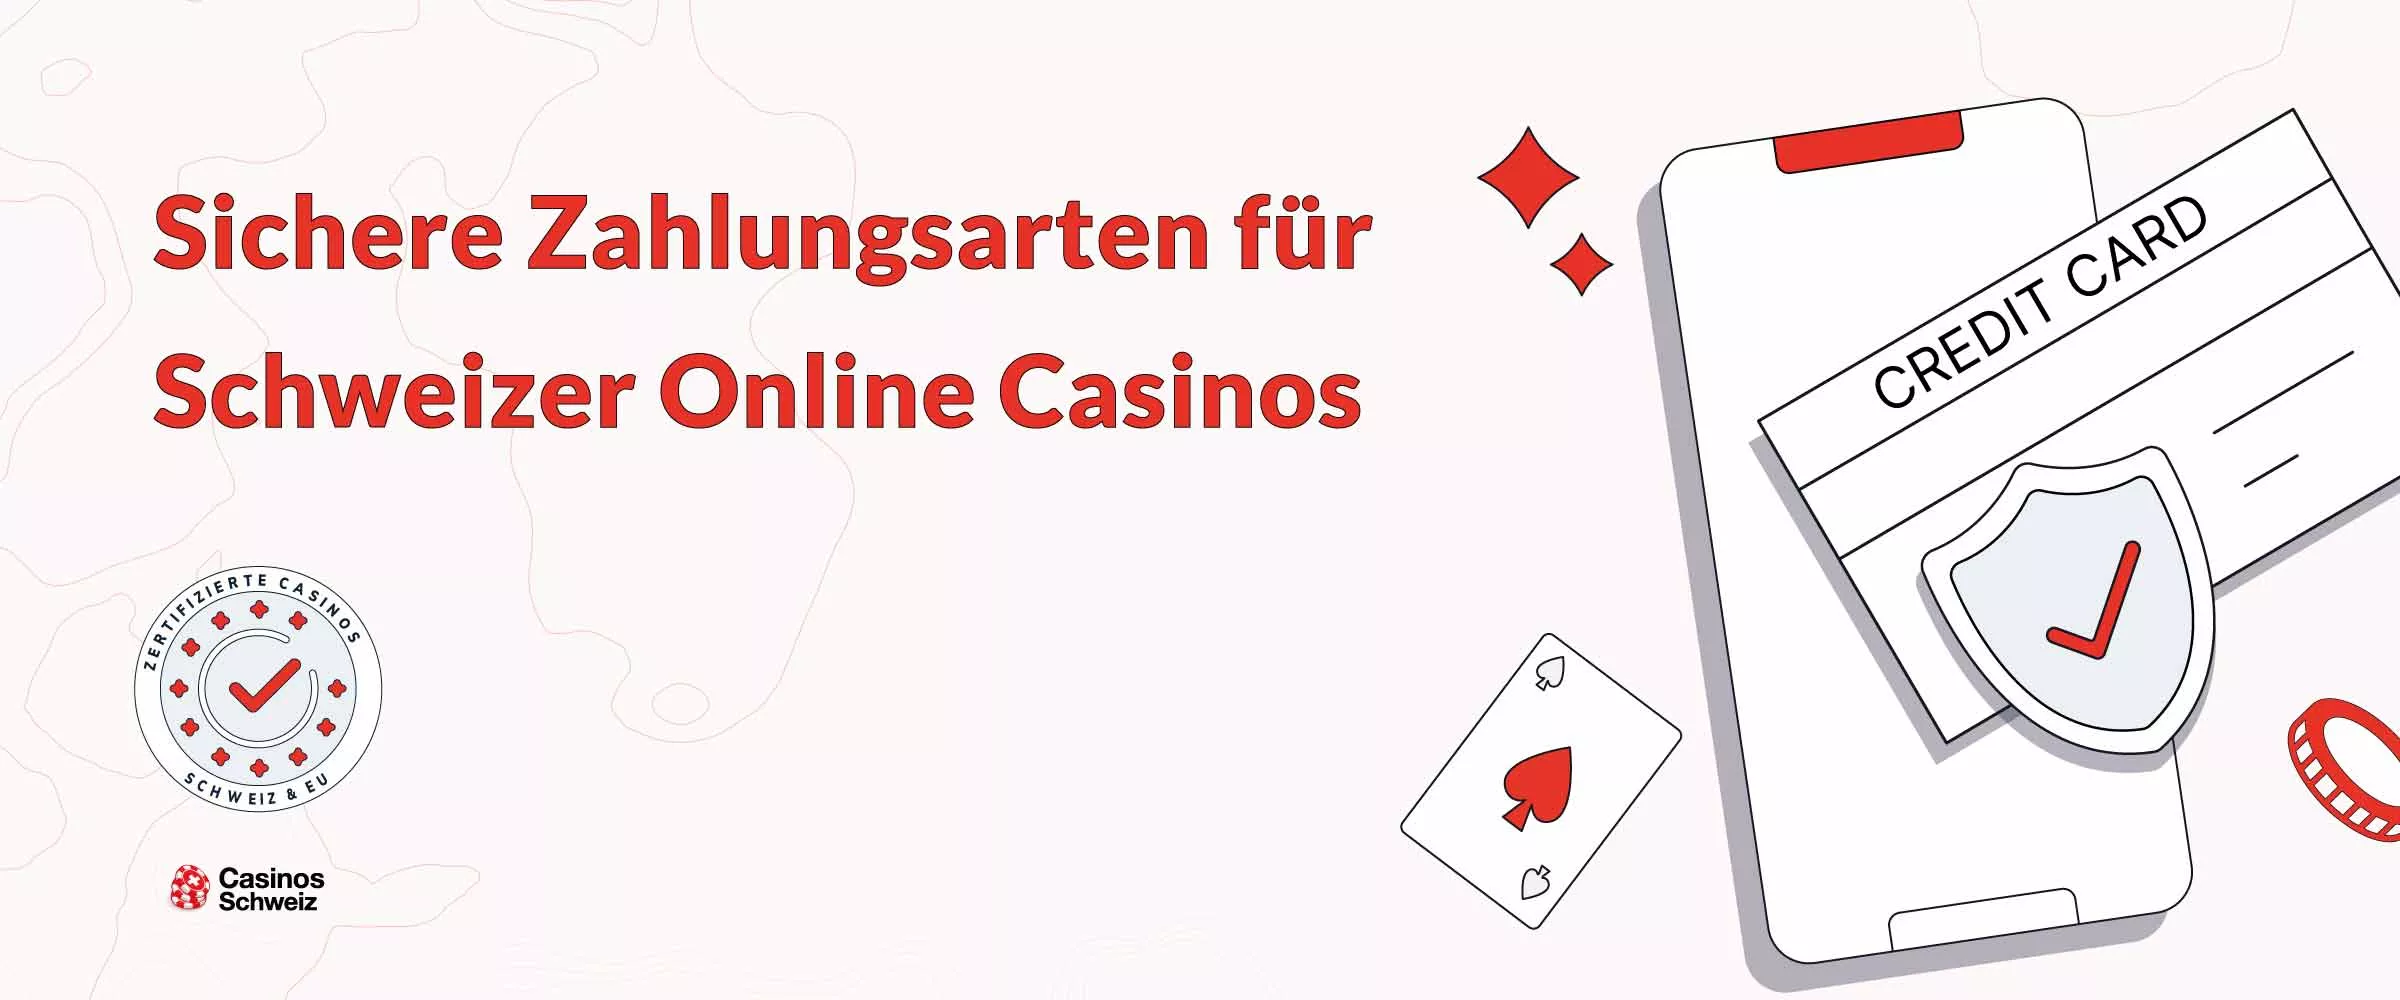 Sichere Zahlungswege in Online Casinos Schweiz